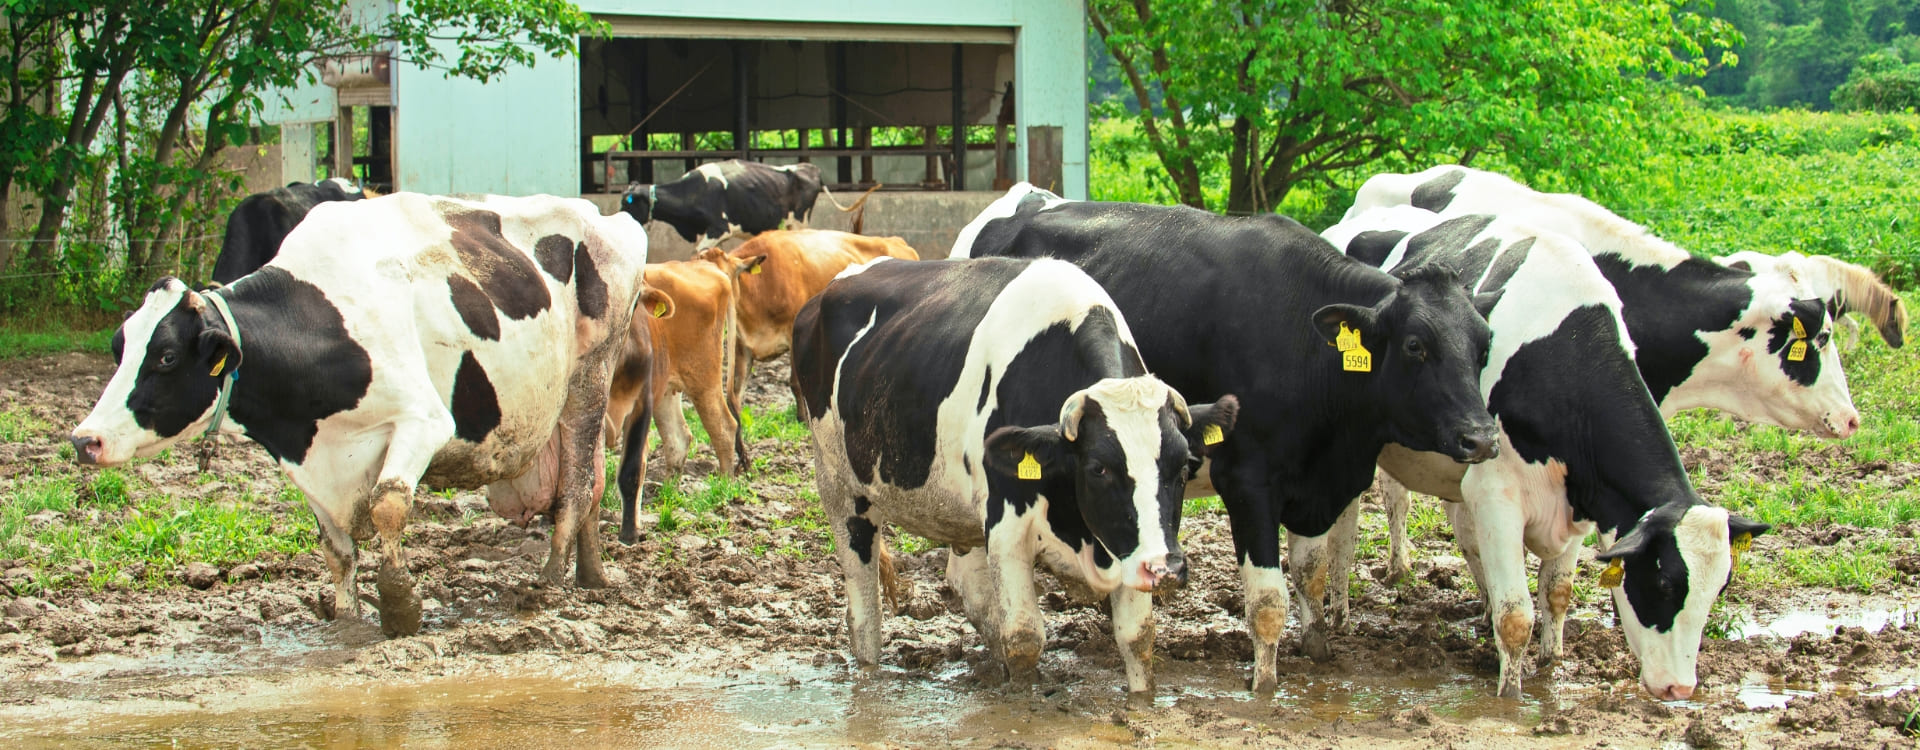 竹田牧場の牛たち,竹田ジャージー牛の群れ